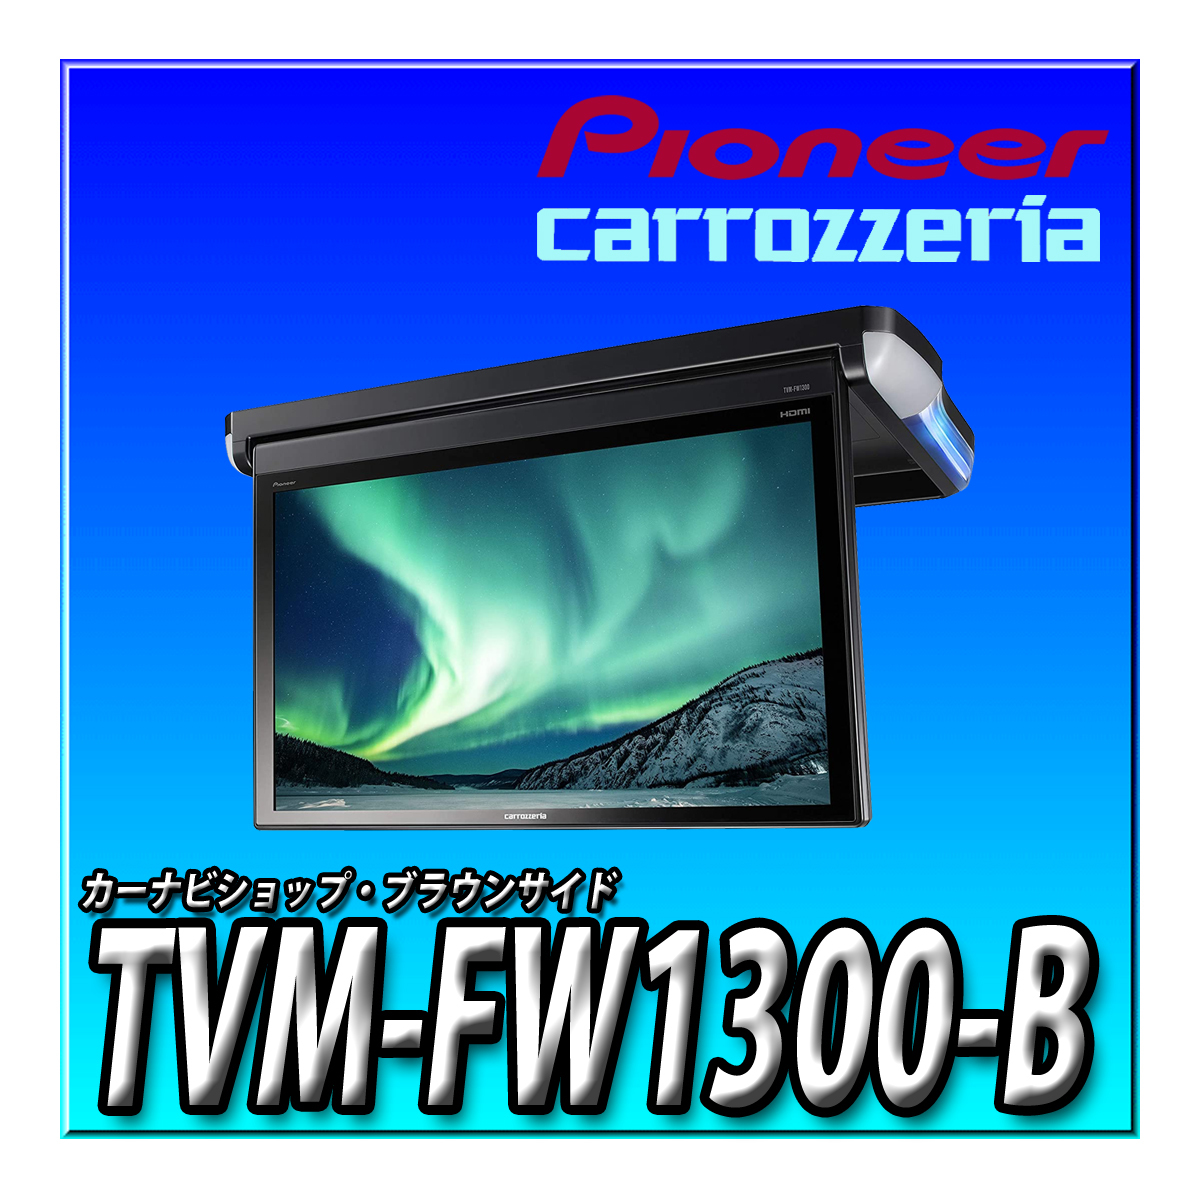 TVM-FW1300-B 新品送料無料 国内最大級 13.3V型VGA フルHD フリップダウンモニター carrozzeria パイオニア カロッツェリア_画像1